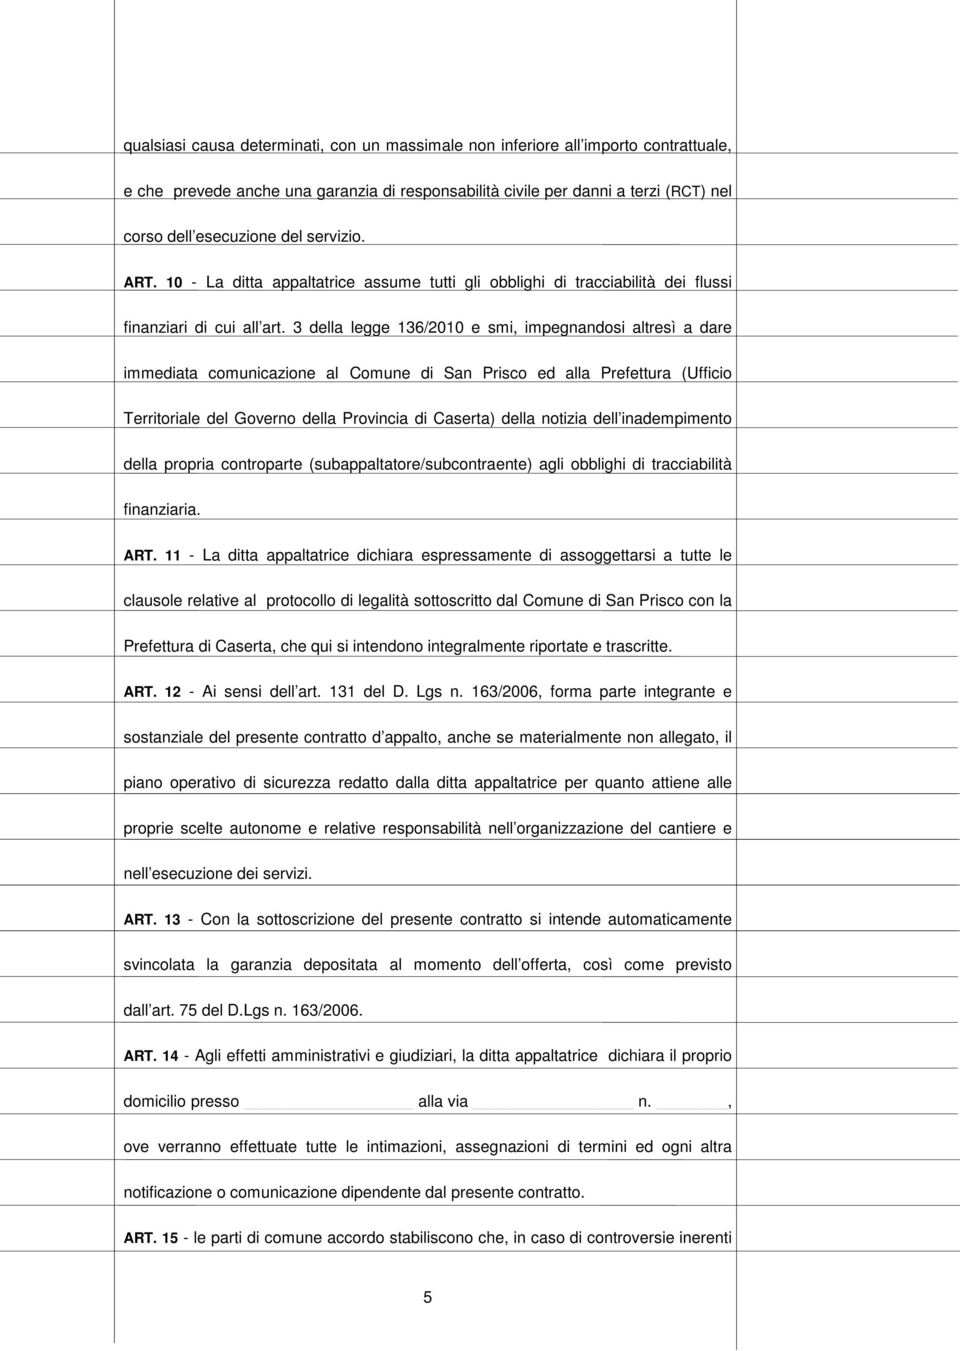 3 della legge 136/2010 e smi, impegnandosi altresì a dare immediata comunicazione al Comune di San Prisco ed alla Prefettura (Ufficio Territoriale del Governo della Provincia di Caserta) della